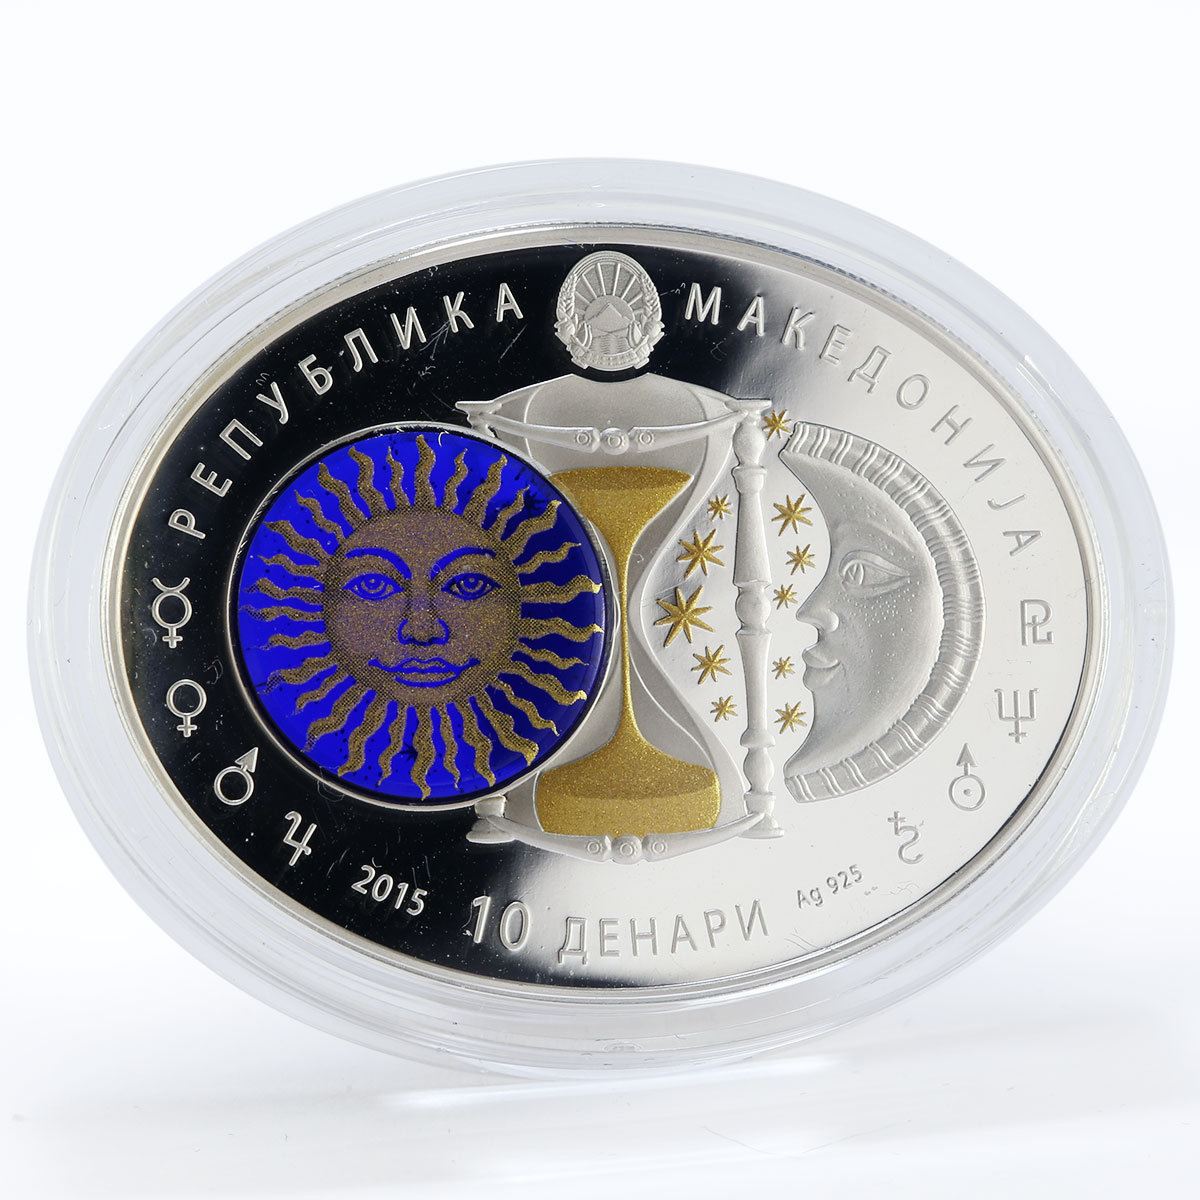 Macedonia 10 denari Zodiac Cancer 3D printing Gilded Silver Oval Coin 2015